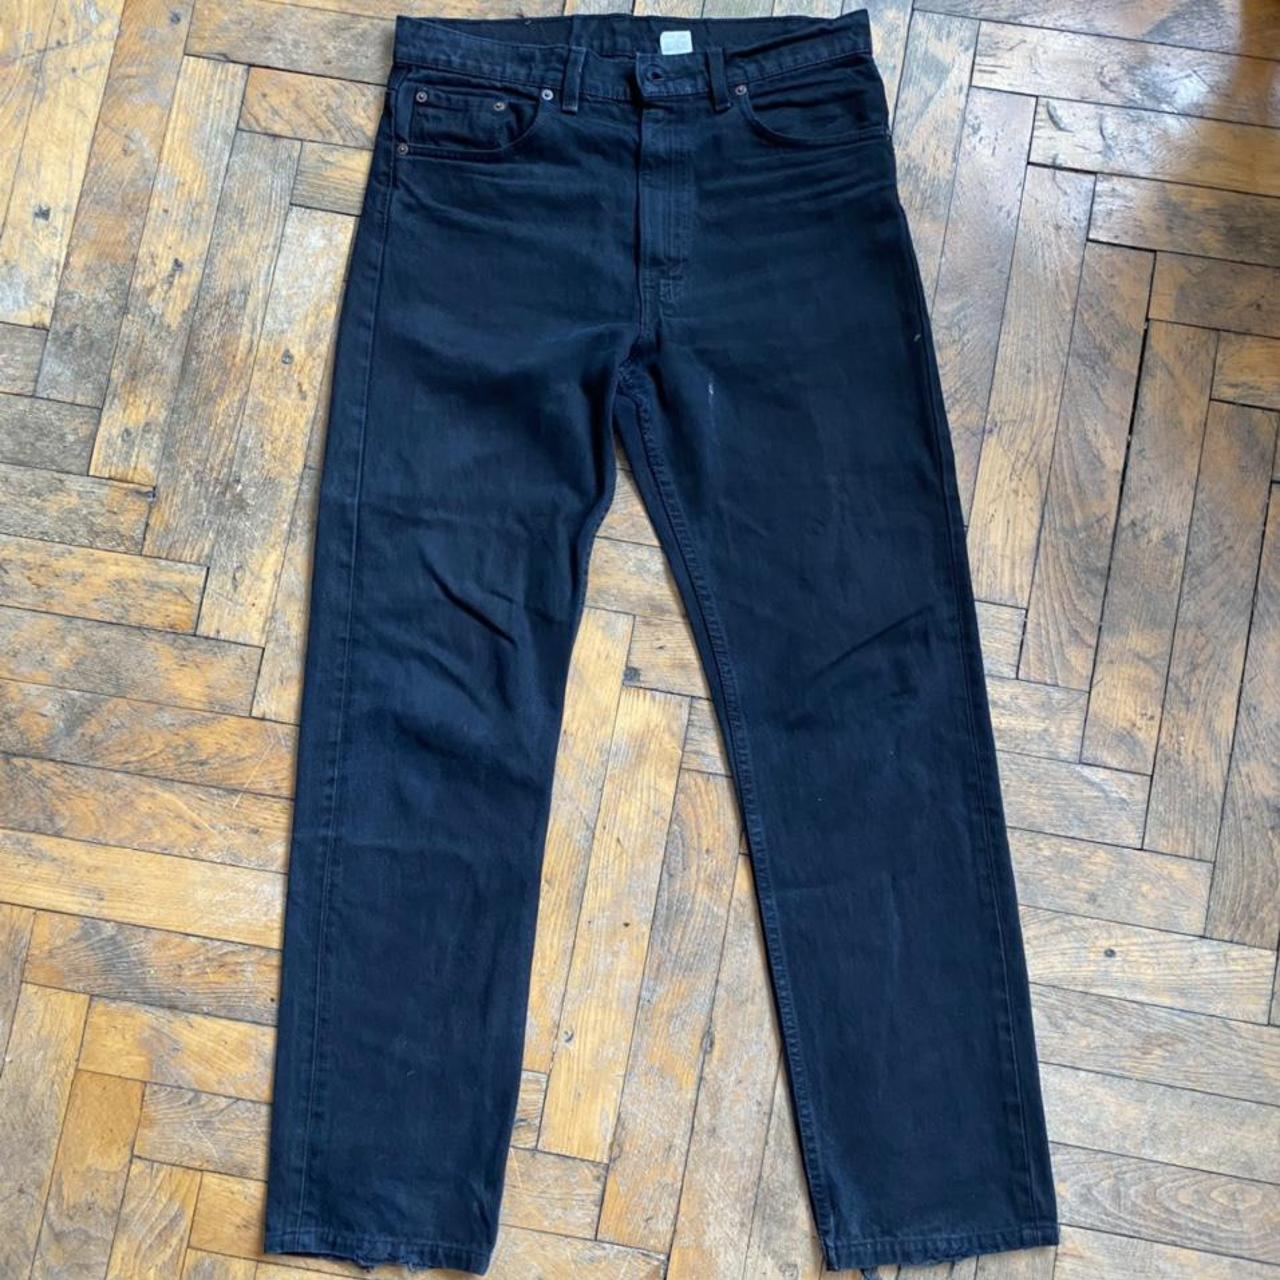 Levi’s 505s Black Jeans - Depop